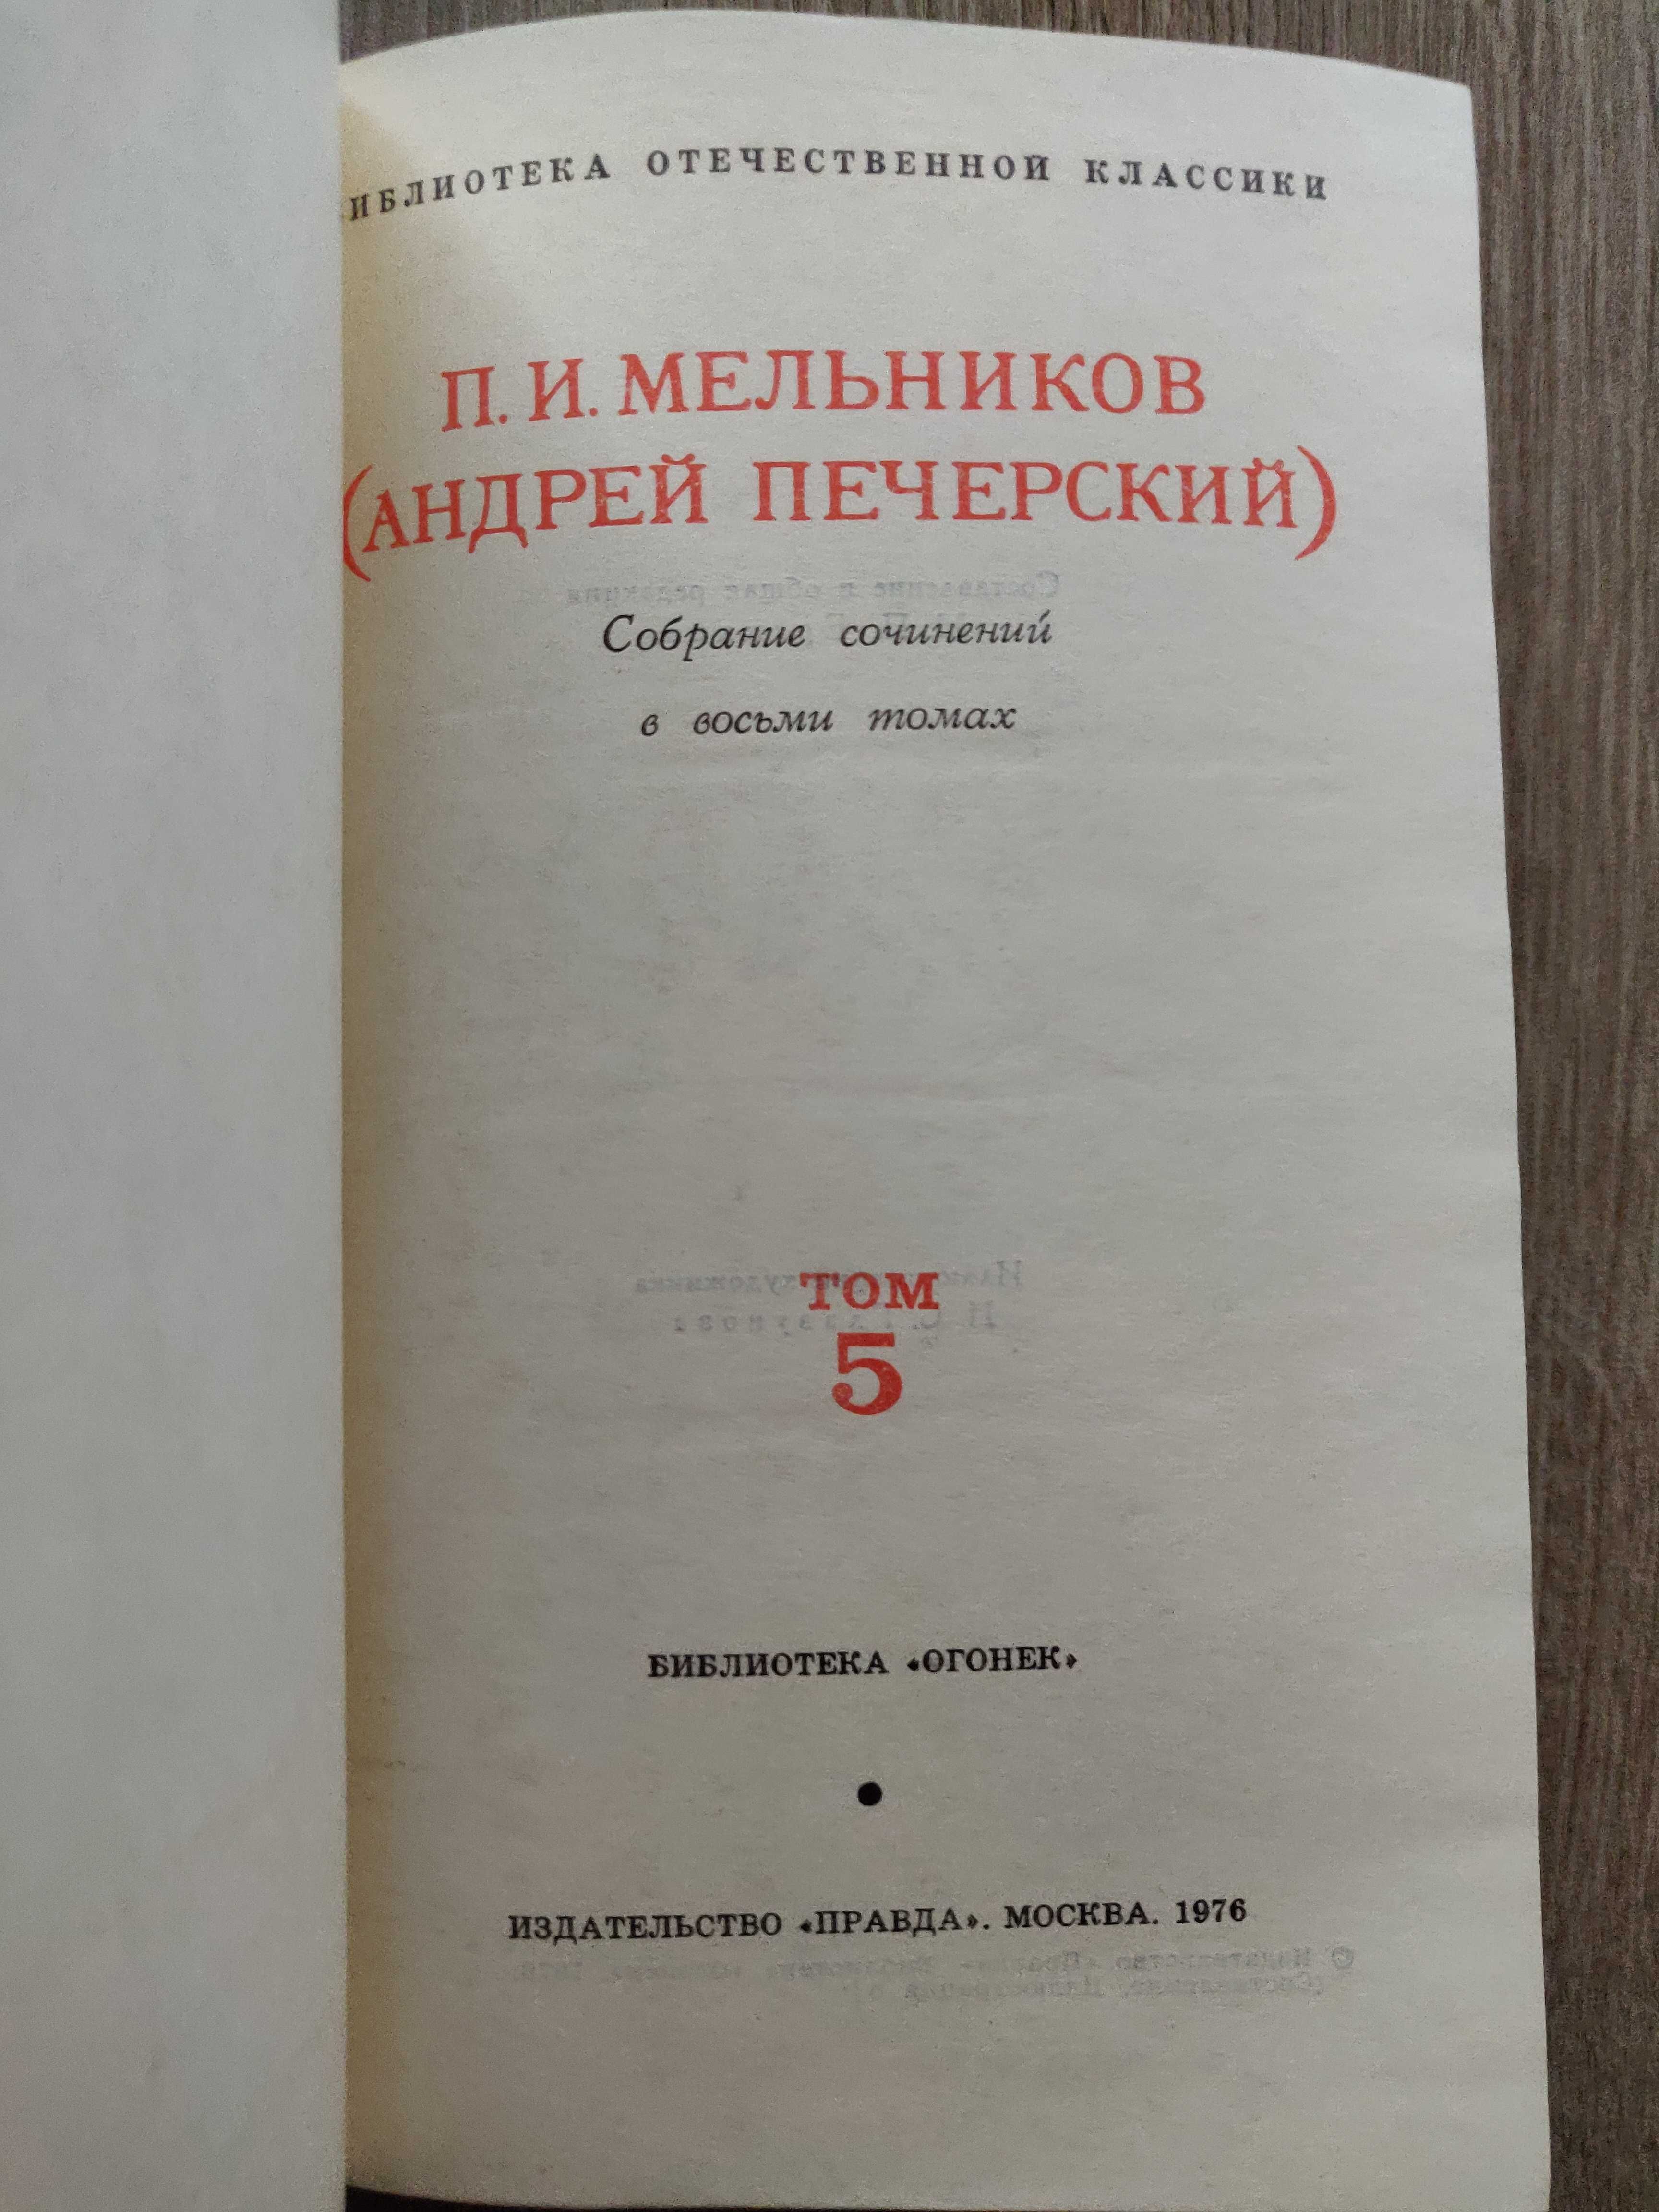 Мельников П.И. (Андрей Печерский) в 8 томах 1976 г. идеальное сост-ние